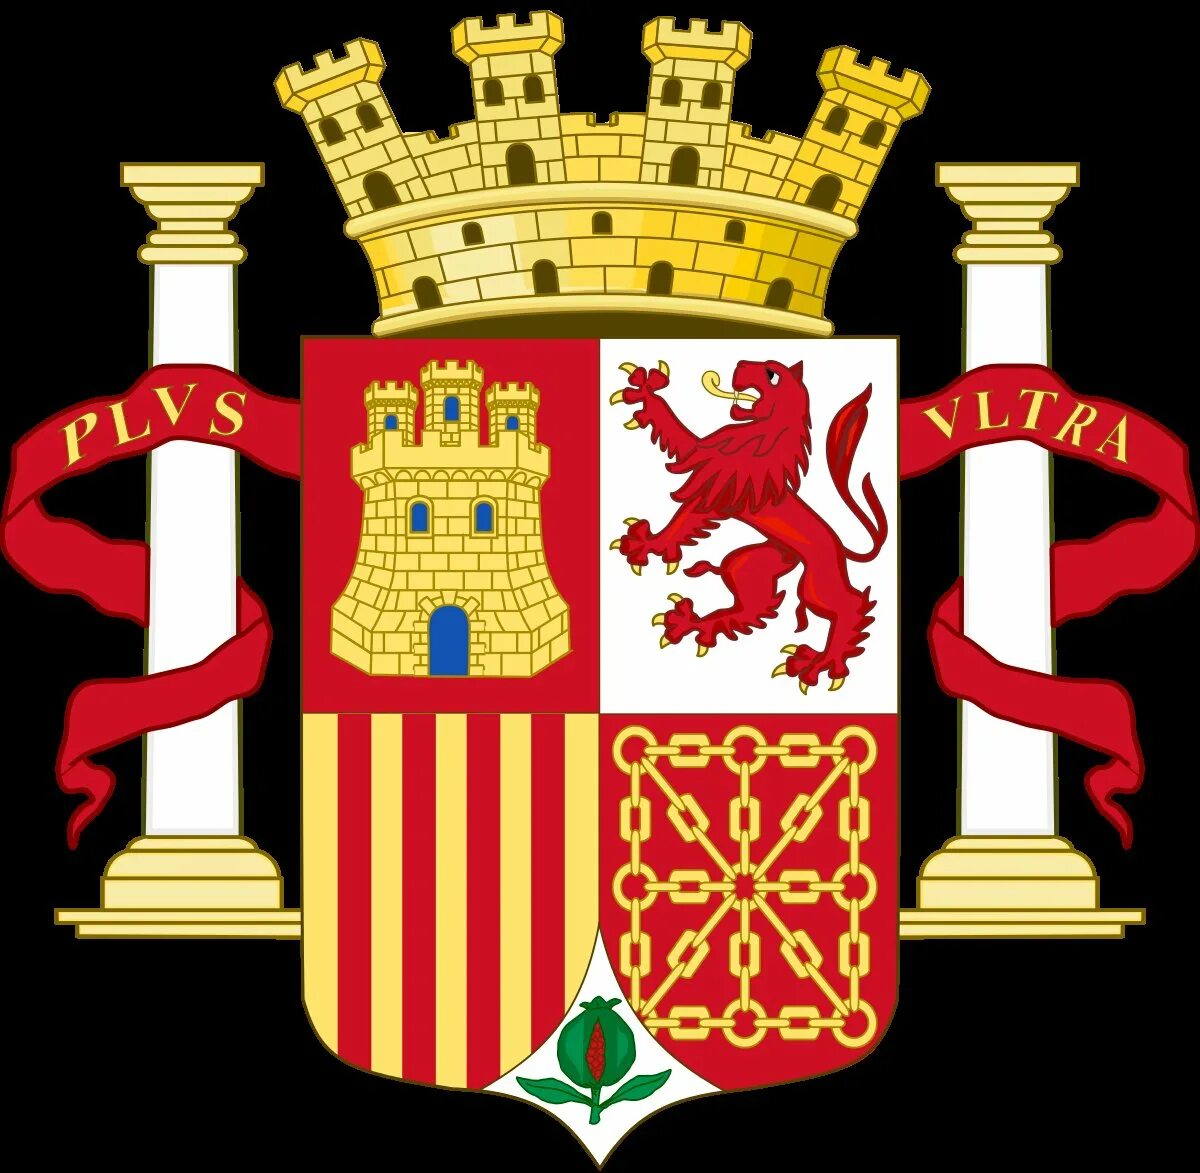 Герб Испании 13 века. Республика Испания. Испанская Республика. Альтернативный герб Испании. Испанский герб